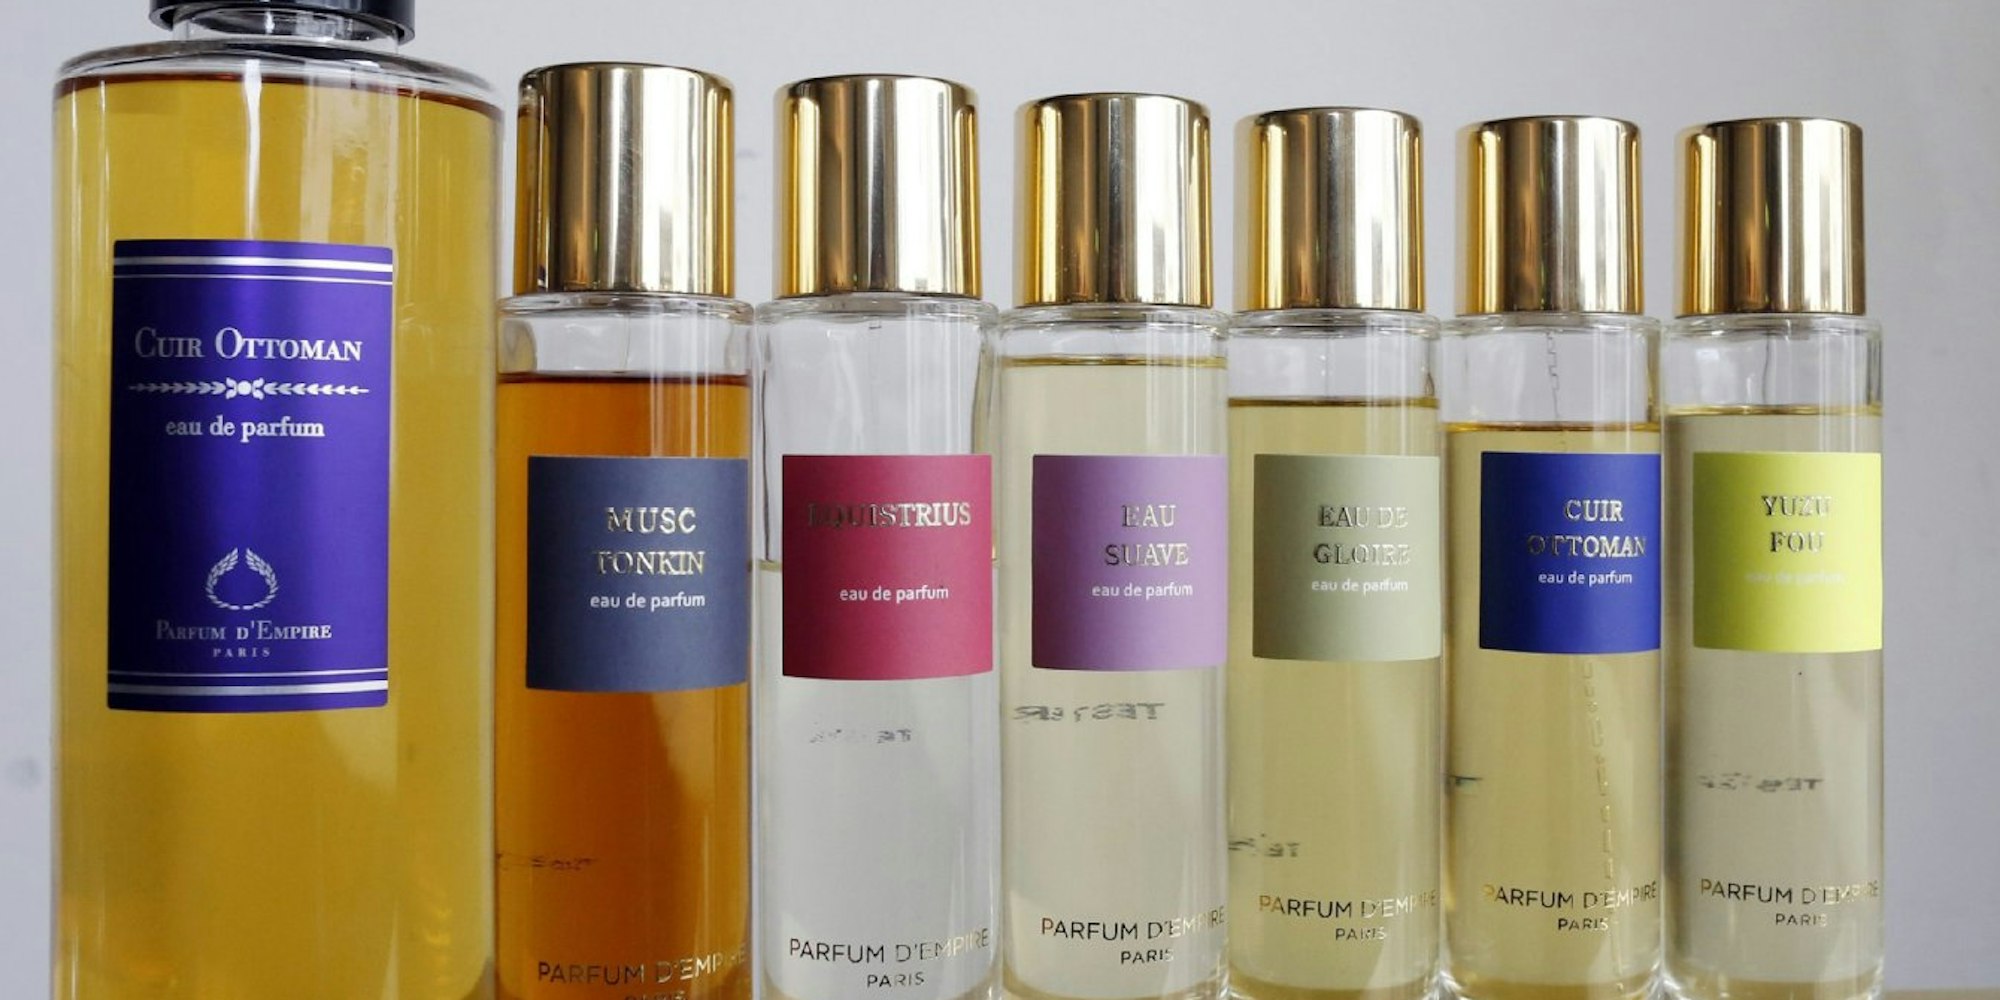 Viele Menschen verschenken gerne Parfum. Aber wie findet man den richtigen Duft für eine andere Person?